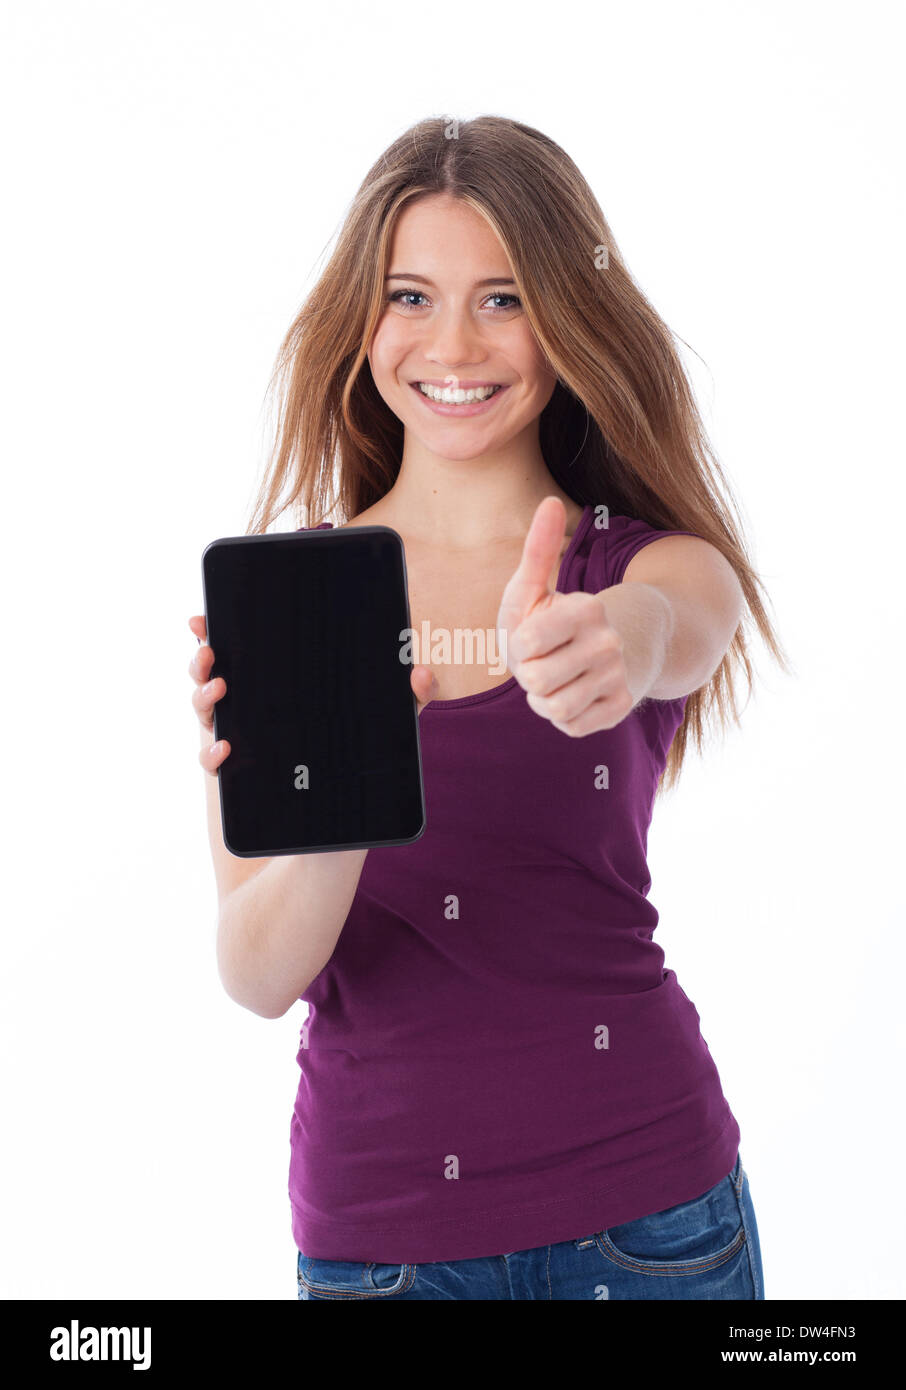 Nette Frau zeigt eine elektronische Tablet und haben eine positive Geste Stockfoto